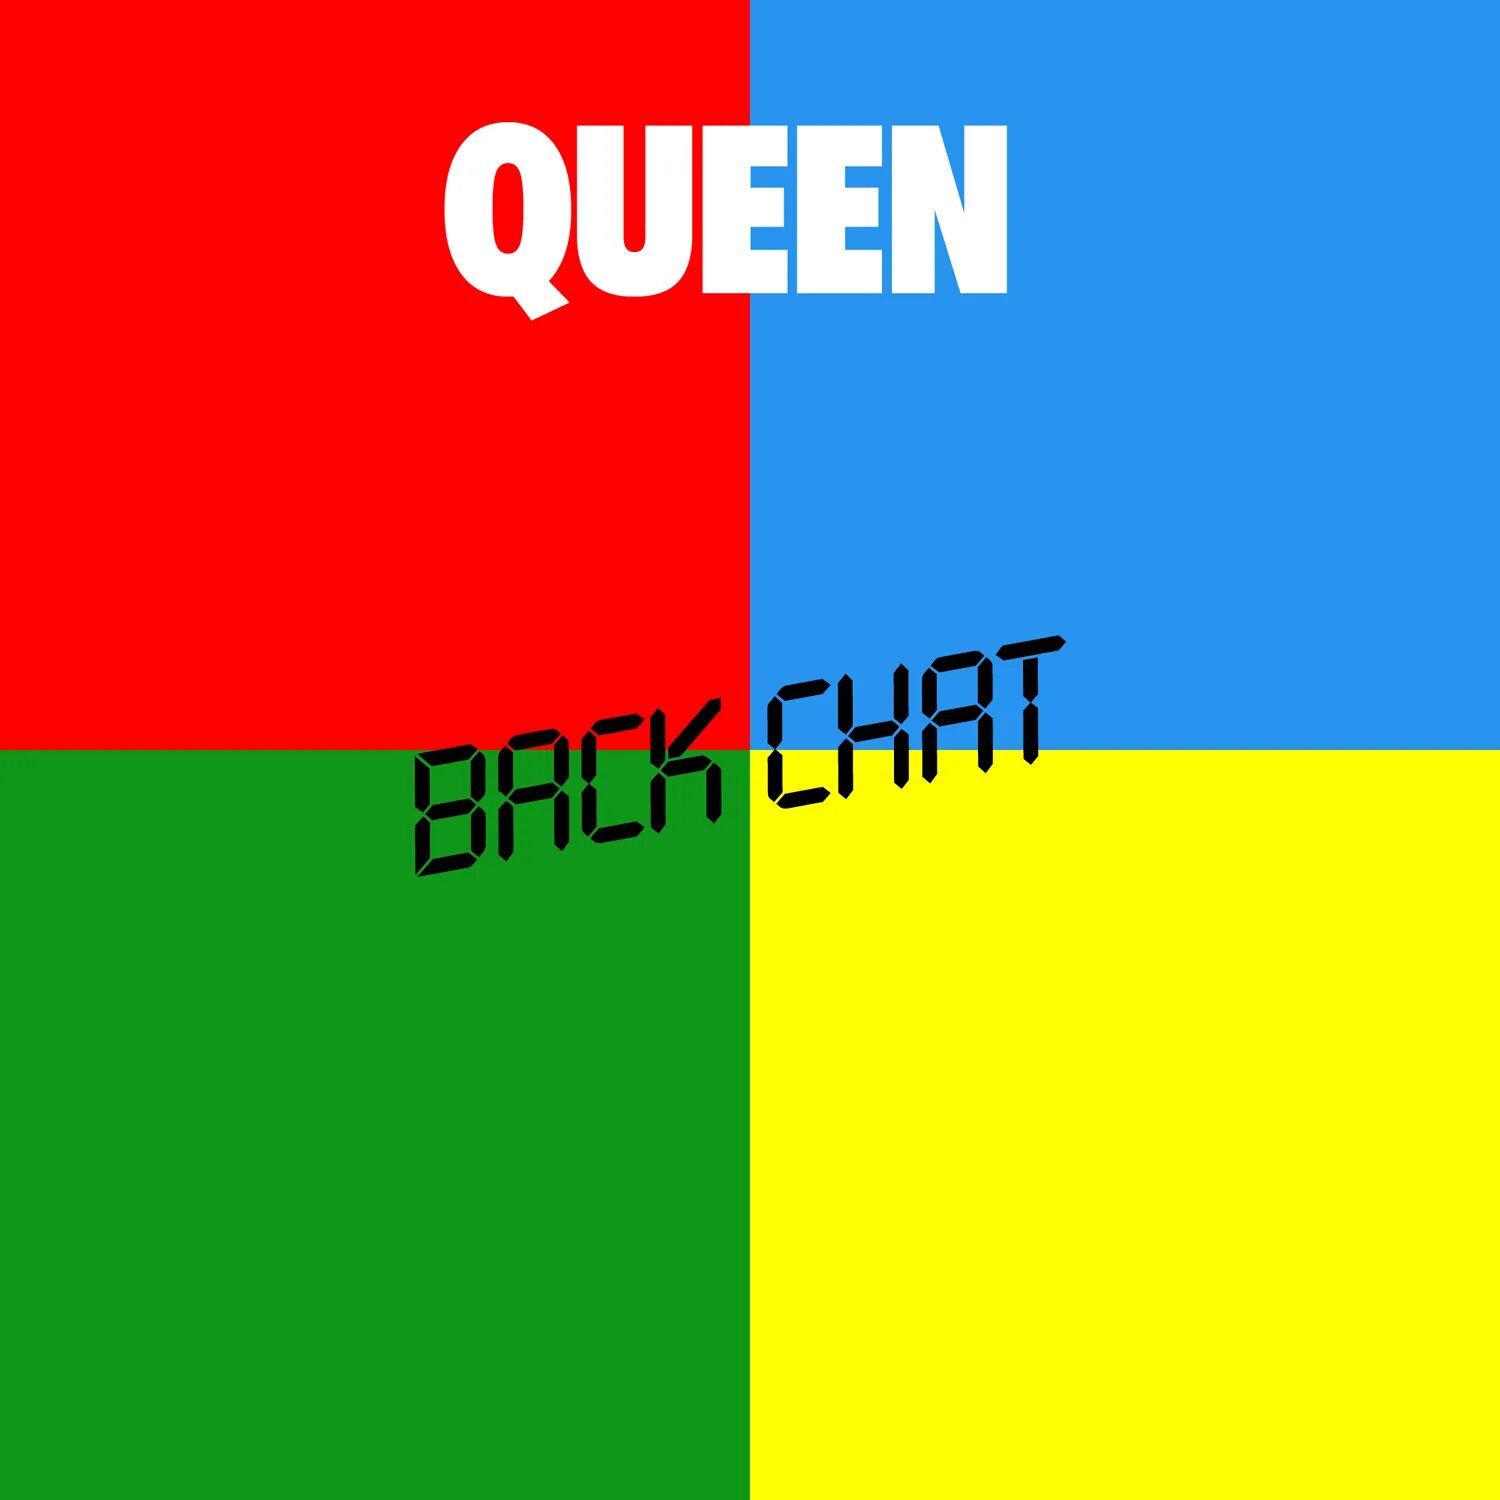 Queen back chat. Queen Singles collection 1 Queen. Queen hot Space обложка. Альбом хот Спейс. Queen back